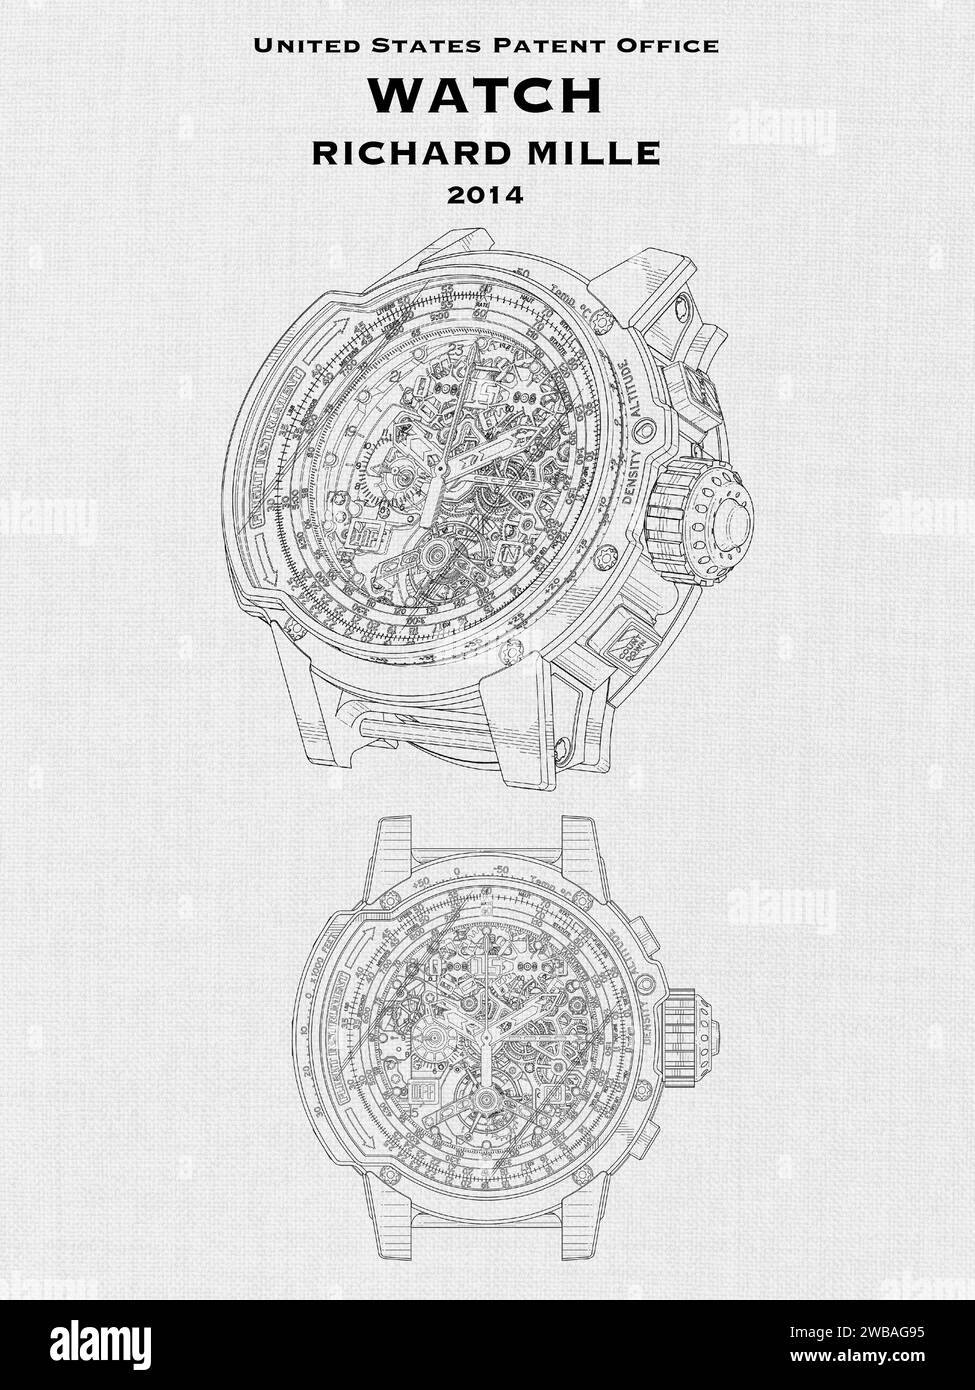 Design dell'ufficio brevetti USA per un orologio di lusso di Richard mille su sfondo bianco Foto Stock